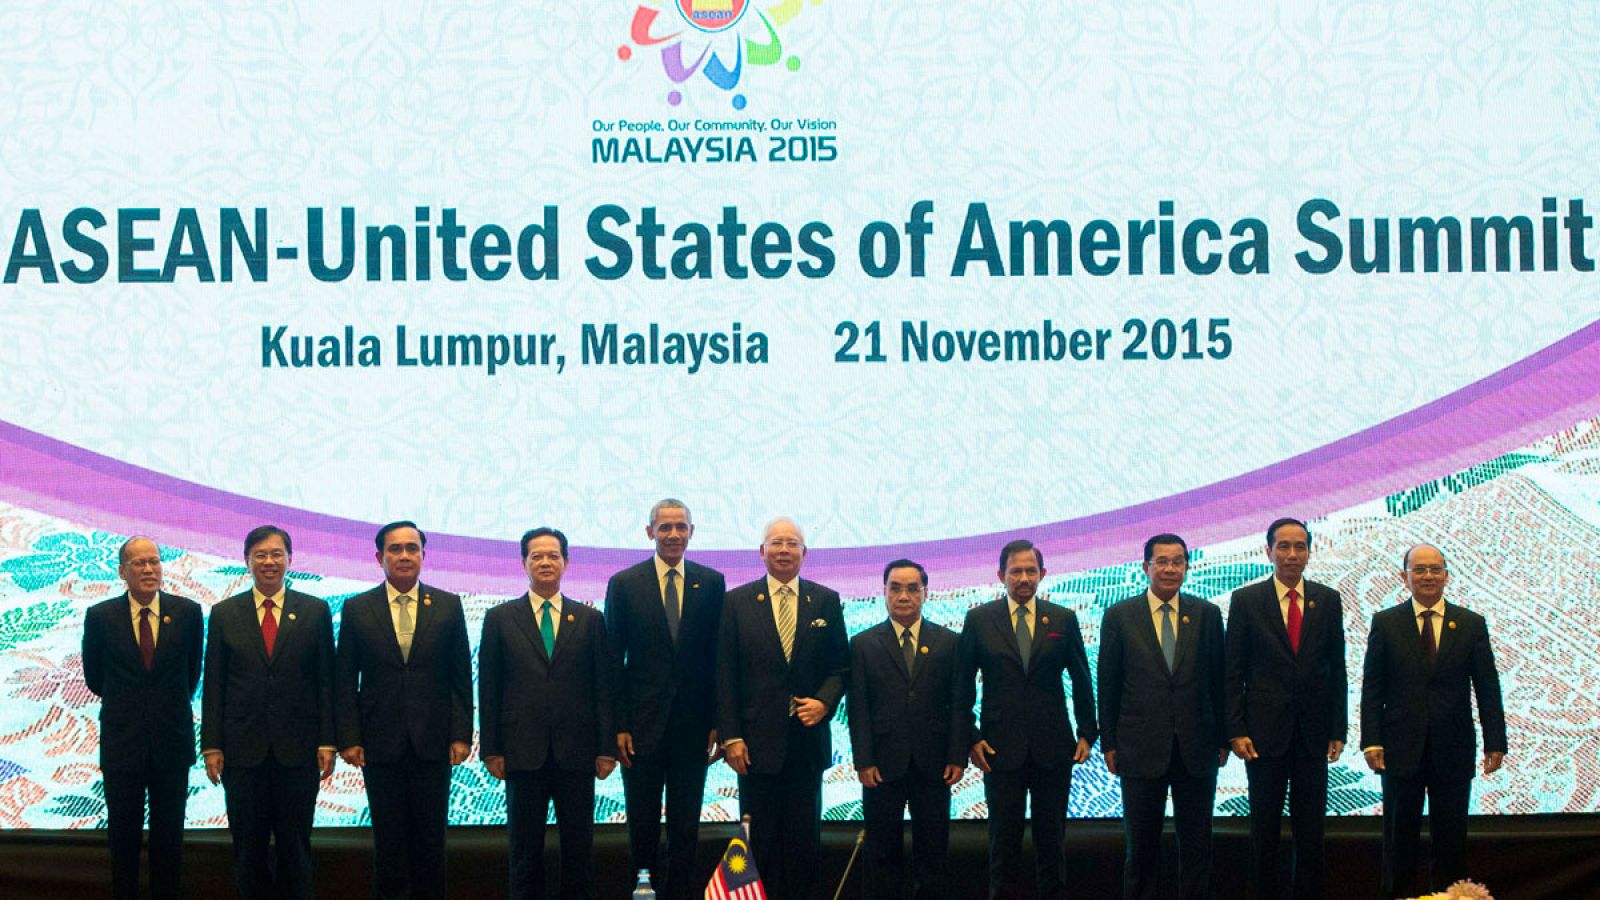 Los presidentes de la ASEAN junto al presidente de Estados Unidos, Barack Obama, al inicio de la cumbre.